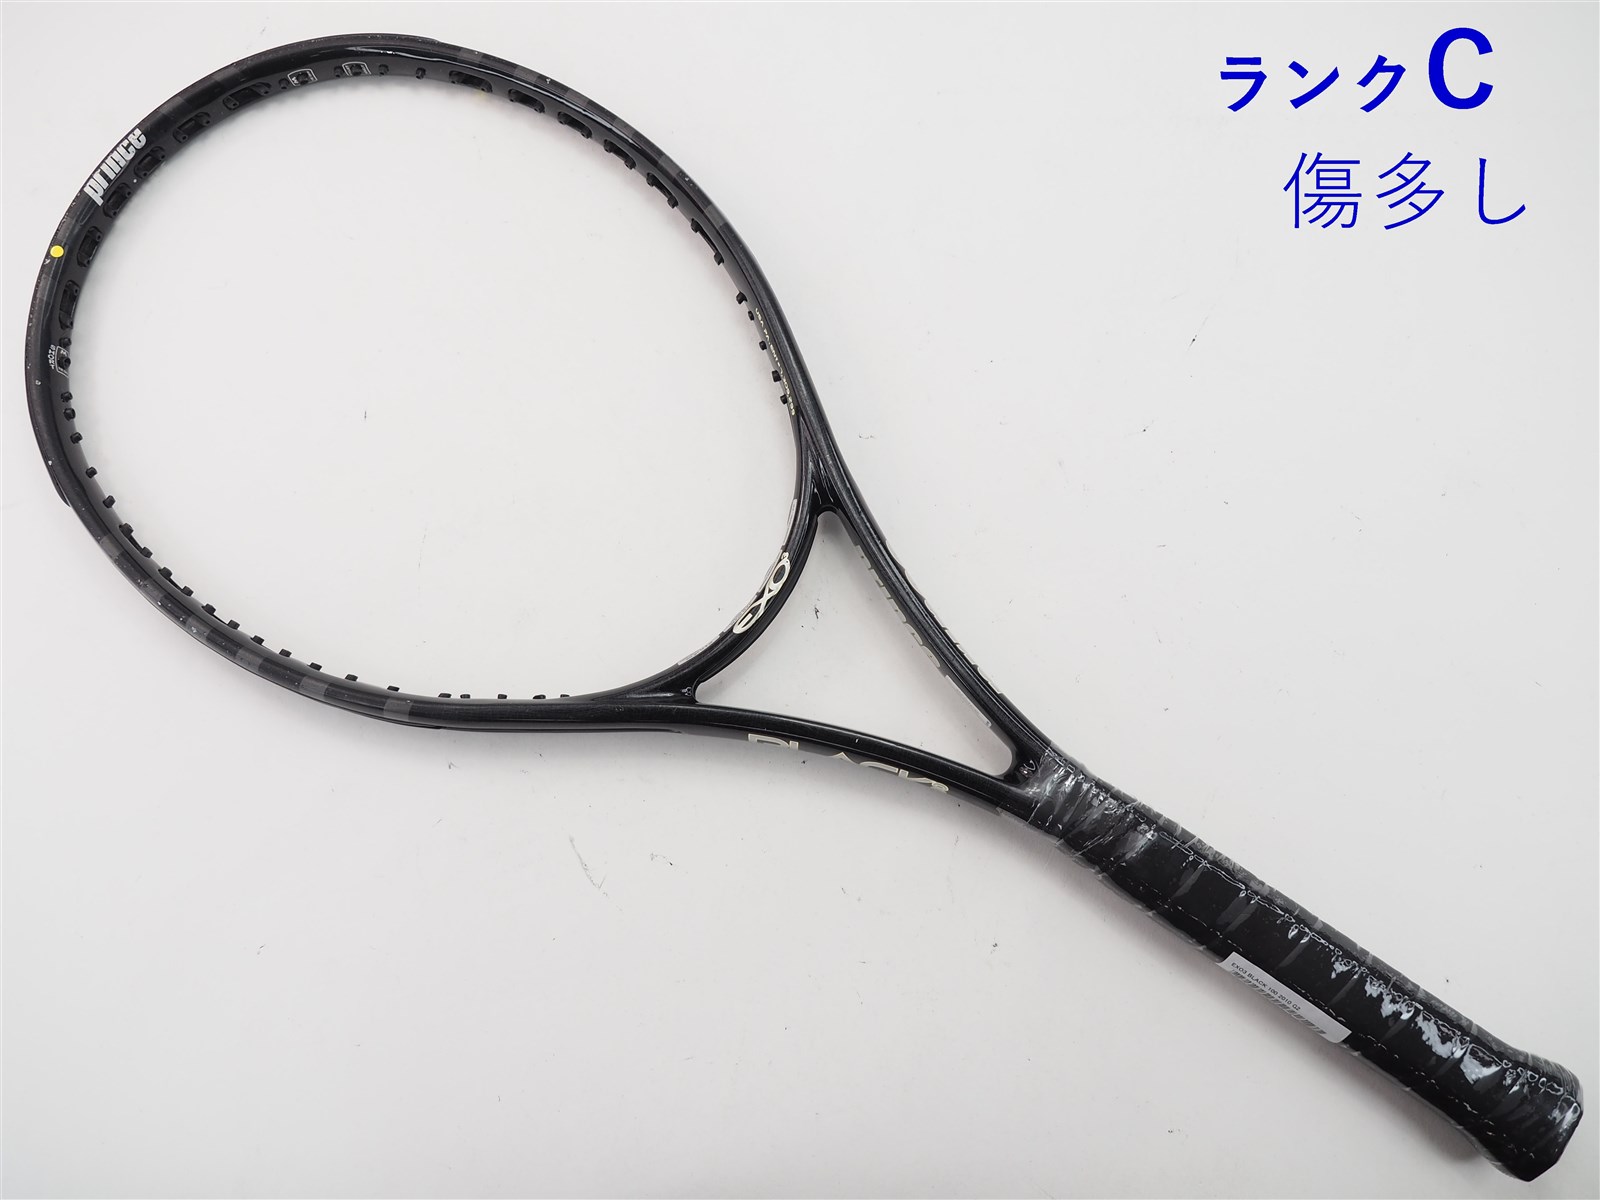 G2装着グリップテニスラケット プリンス イーエックスオースリー ブラック 104 (G2)PRINCE EXO3 BLACK 104